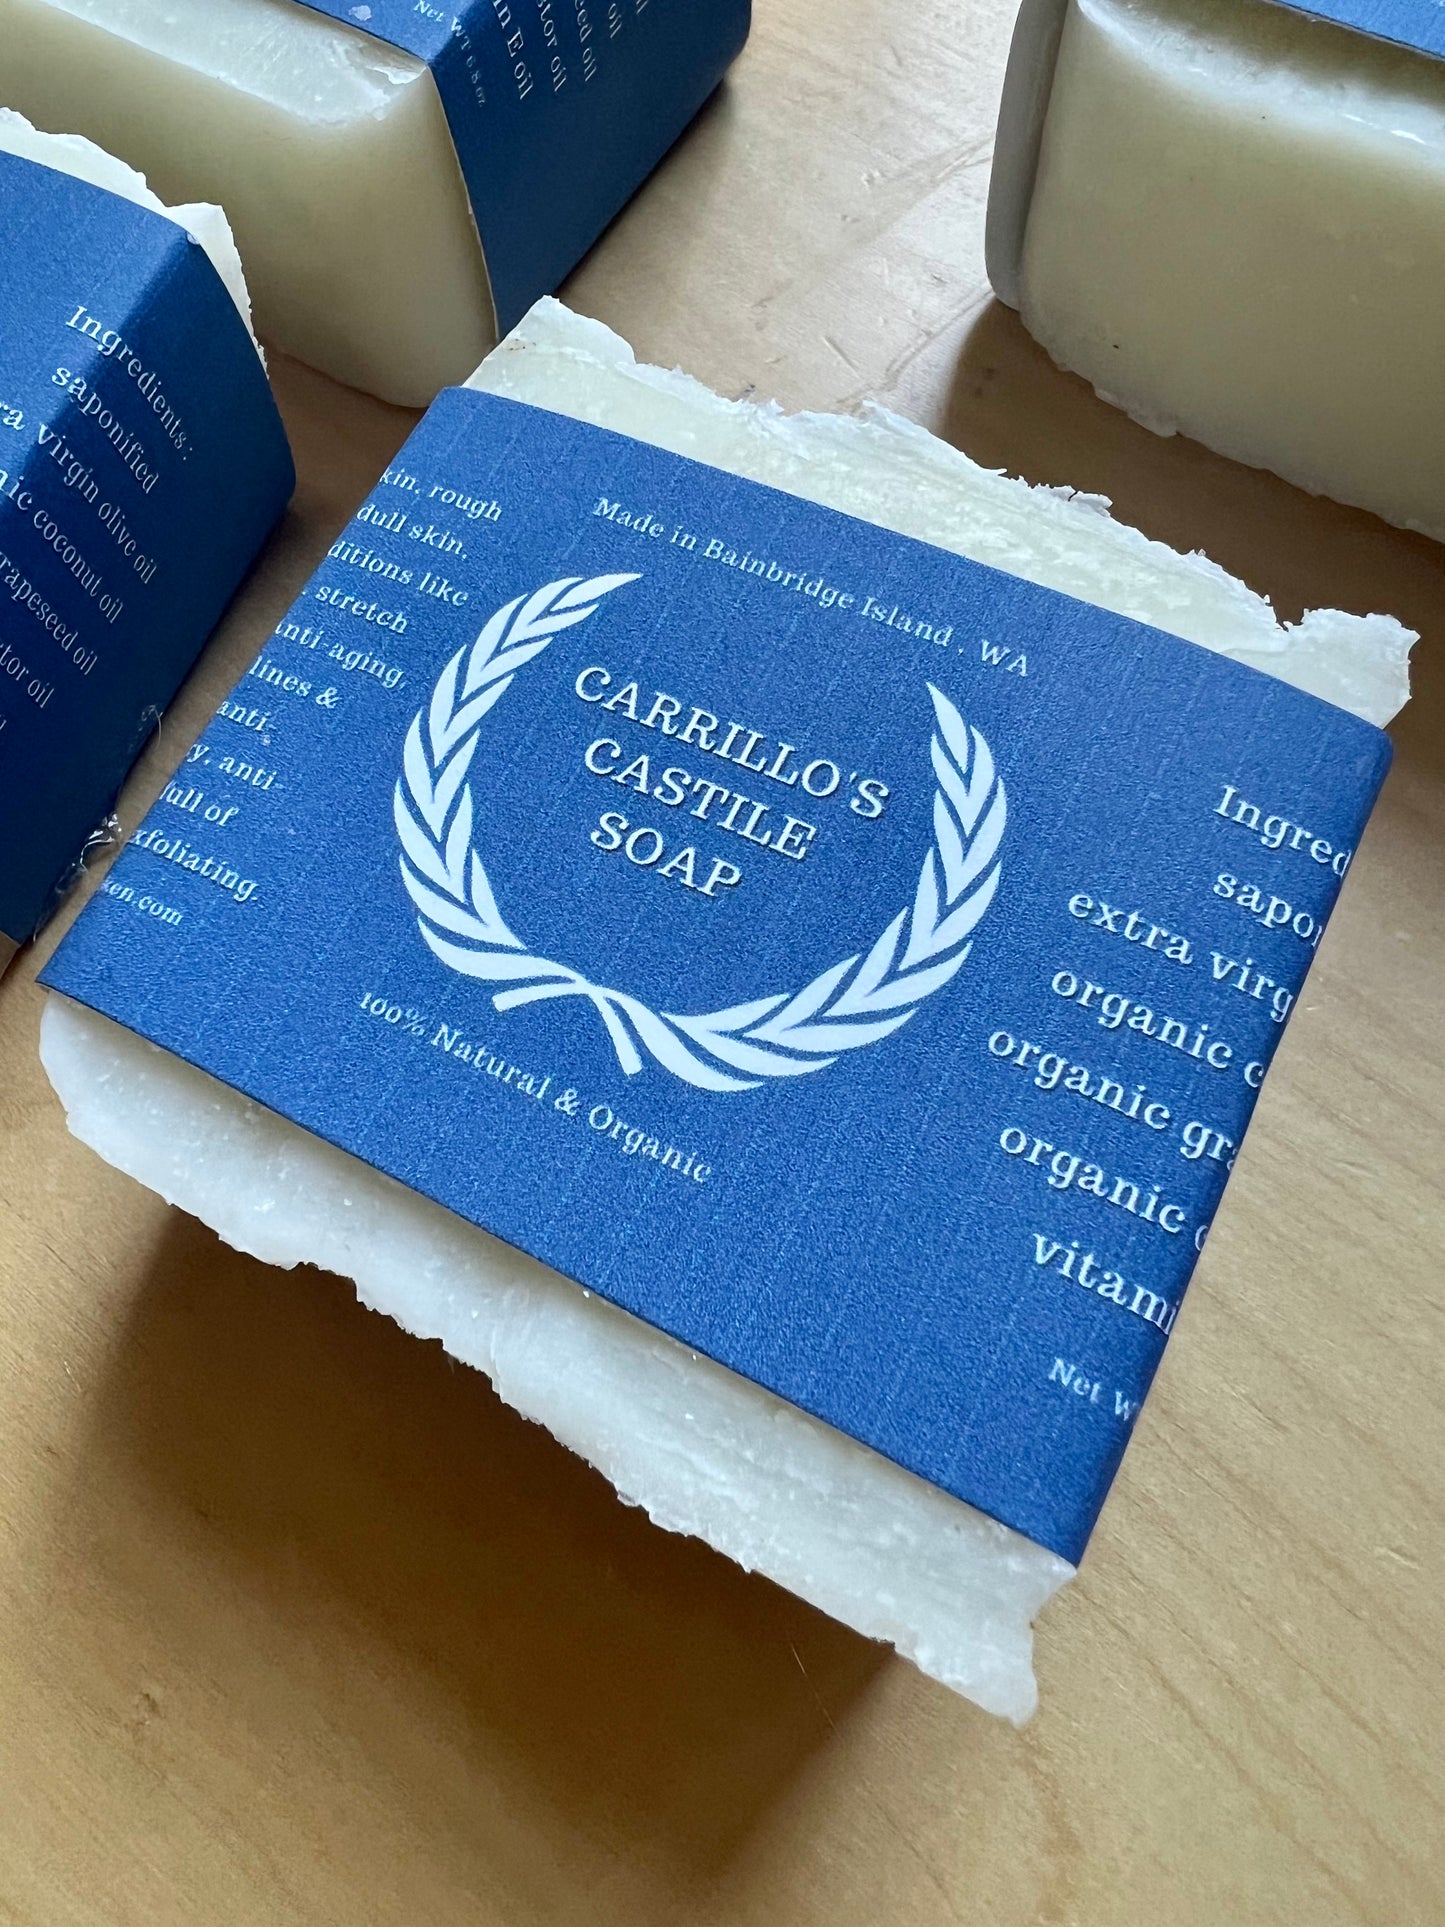 Carrillo's Castile Soap